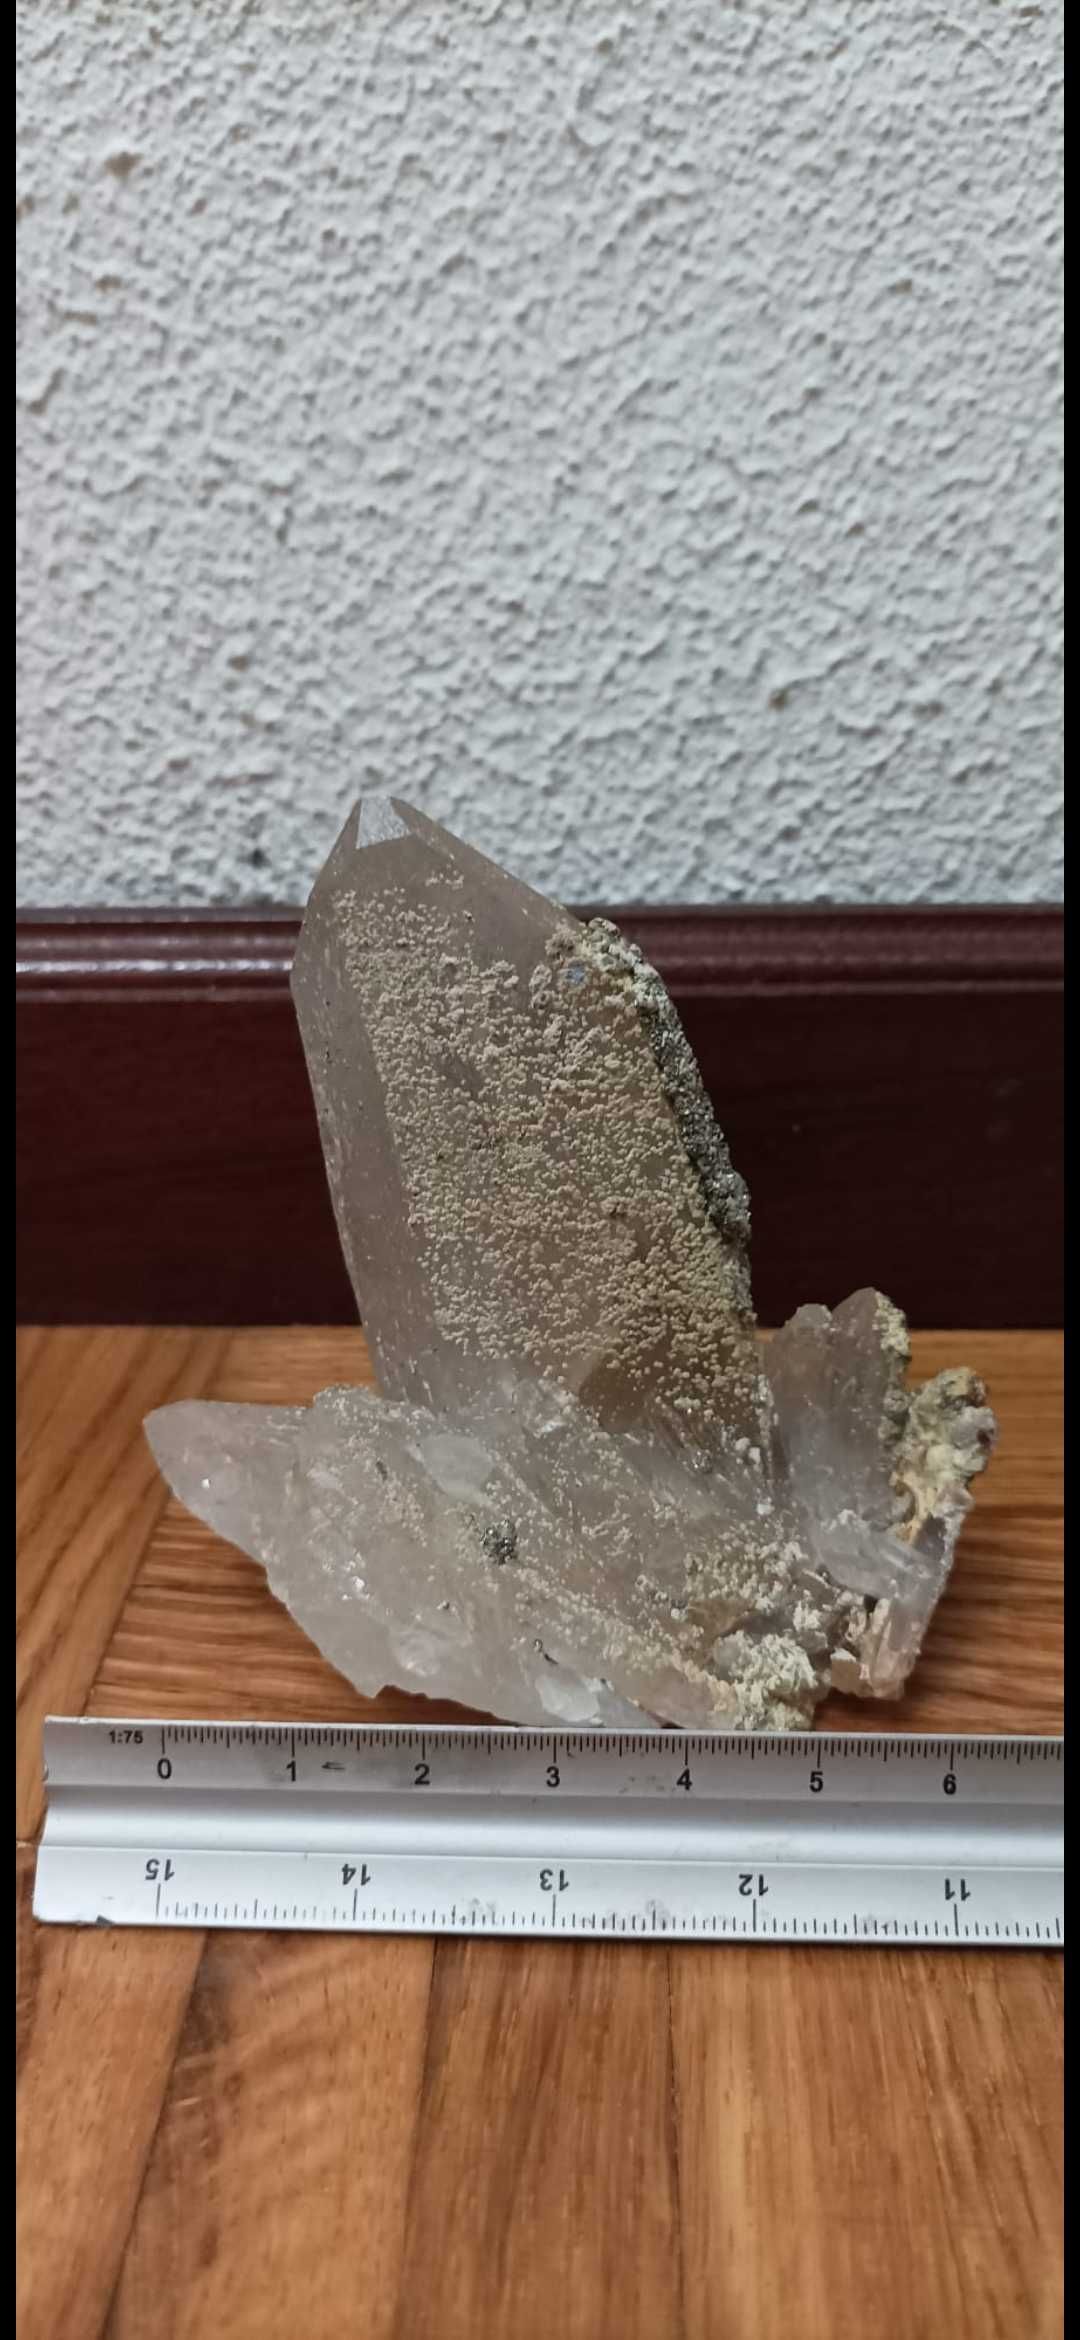 Minerais - pedra